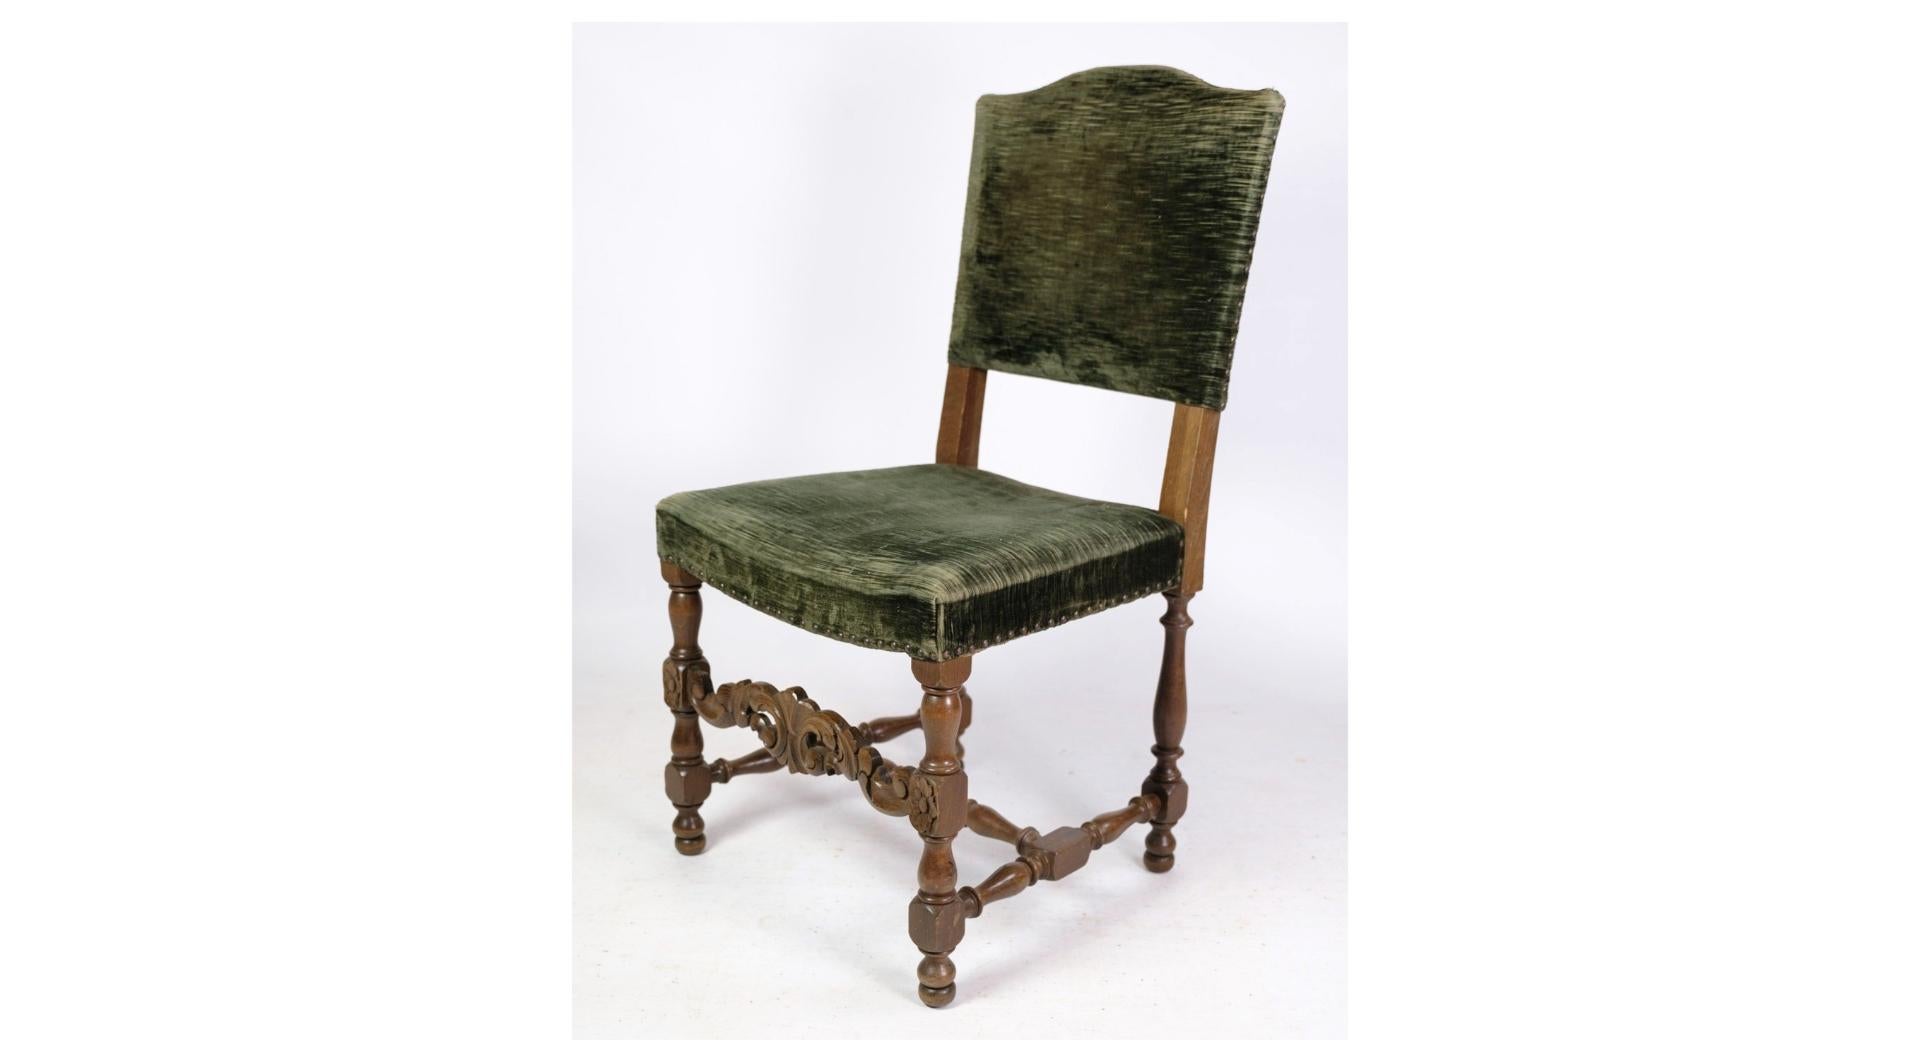 
Les deux chaises en chêne de style Renaissance, recouvertes d'un tissu en velours vert datant des années 1930, sont d'excellents exemples de meubles anciens au charme intemporel. Ces chaises présentent un design classique de la Renaissance,